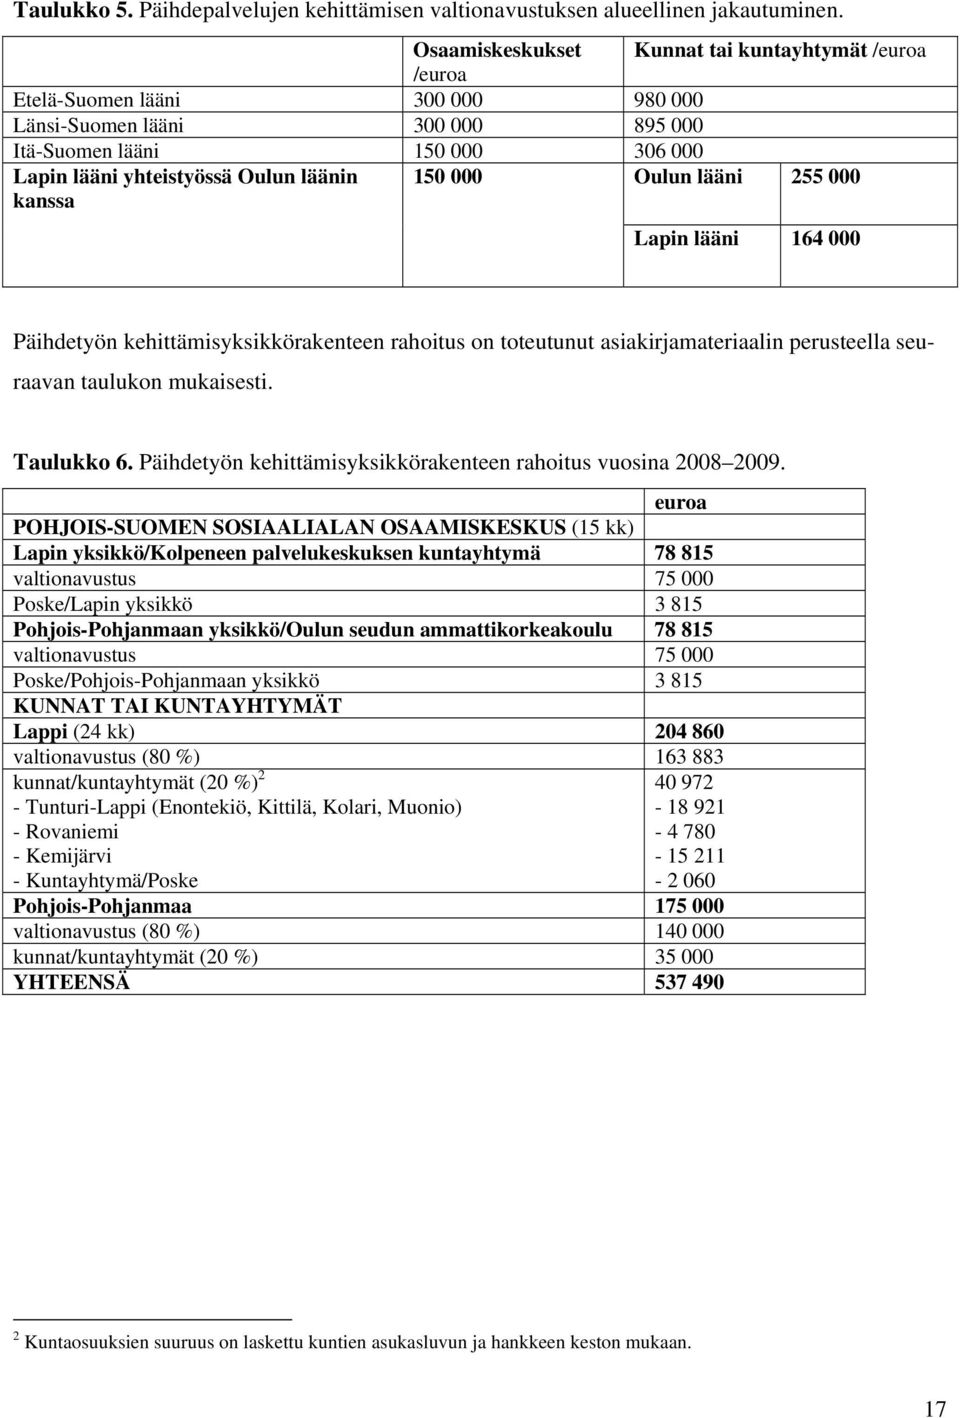 kanssa 150 000 Oulun lääni 255 000 Lapin lääni 164 000 Päihdetyön kehittämisyksikkörakenteen rahoitus on toteutunut asiakirjamateriaalin perusteella seuraavan taulukon mukaisesti. Taulukko 6.